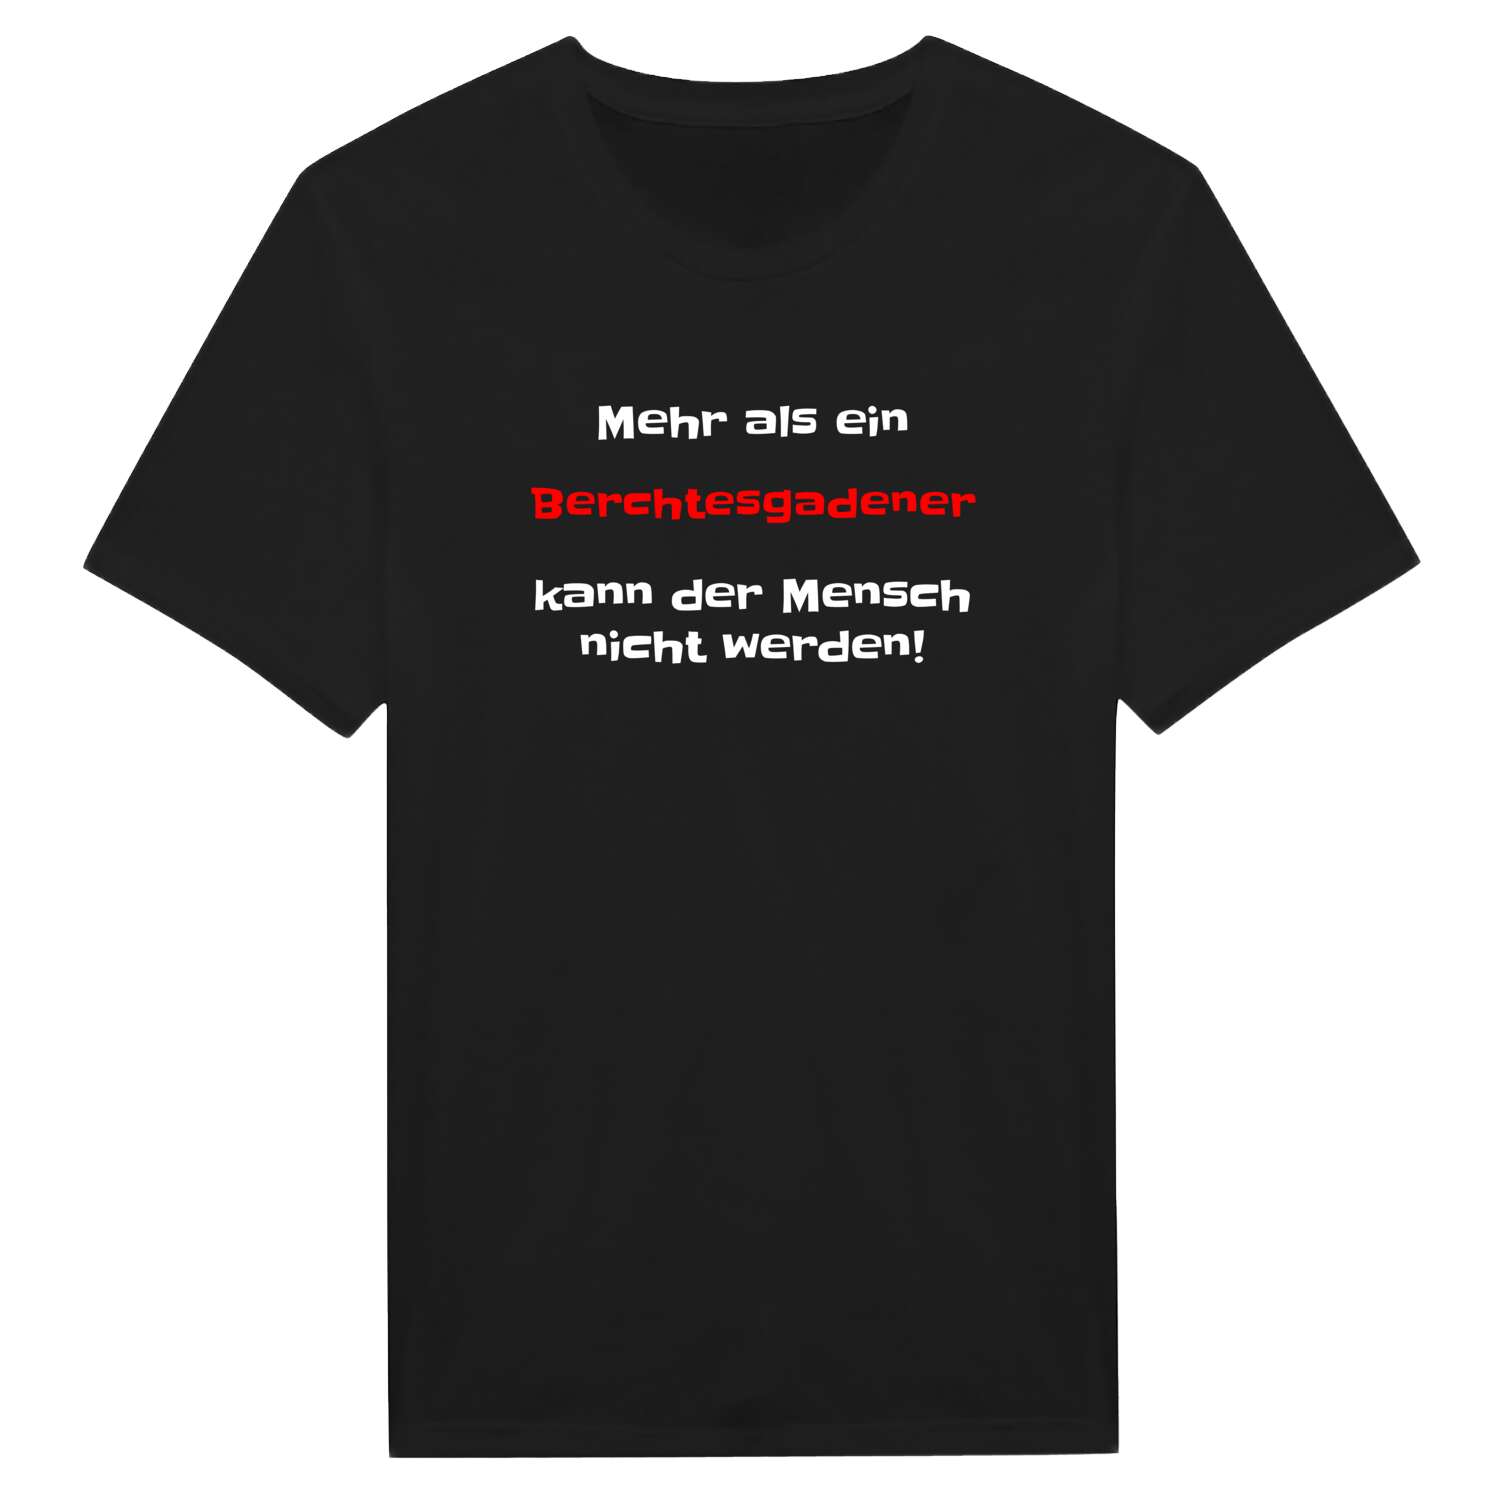 Berchtesgaden T-Shirt »Mehr als ein«